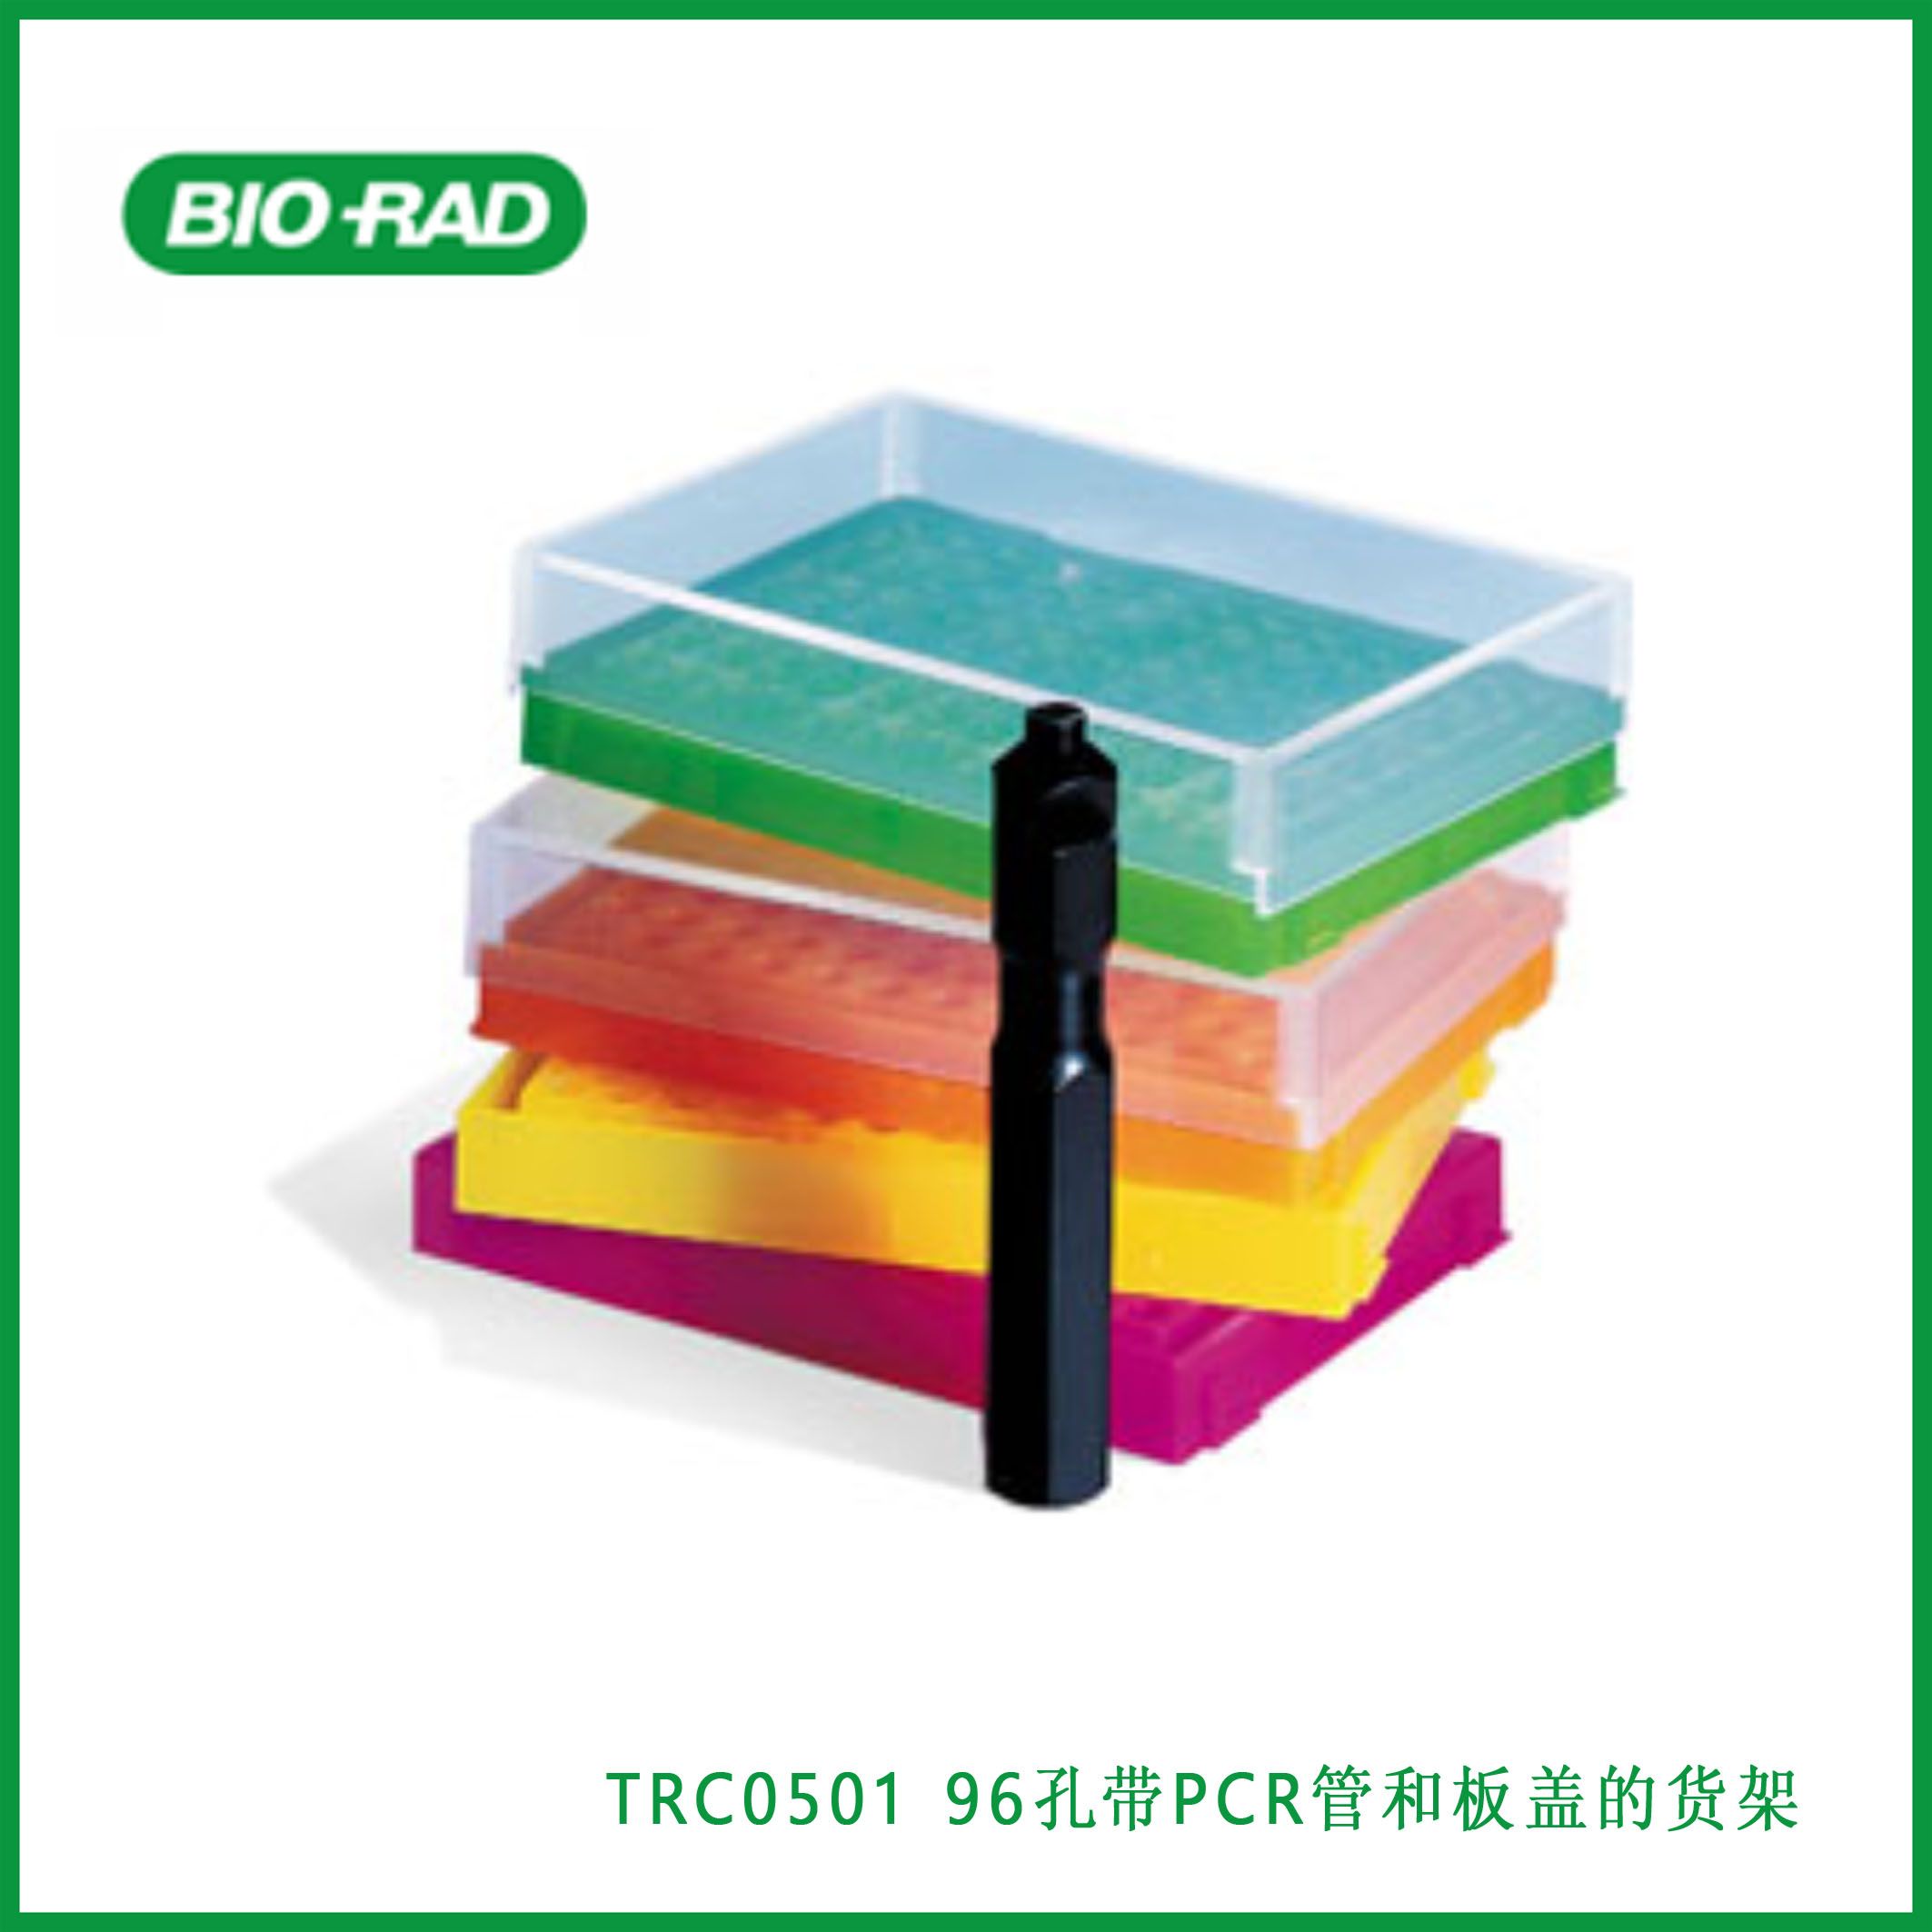 伯乐Bio-RadTRC050196-Place Racks with Covers for PCR Tubes and Plates, assorted colors, 96孔带PCR管和板盖的货架，各种颜色，现货